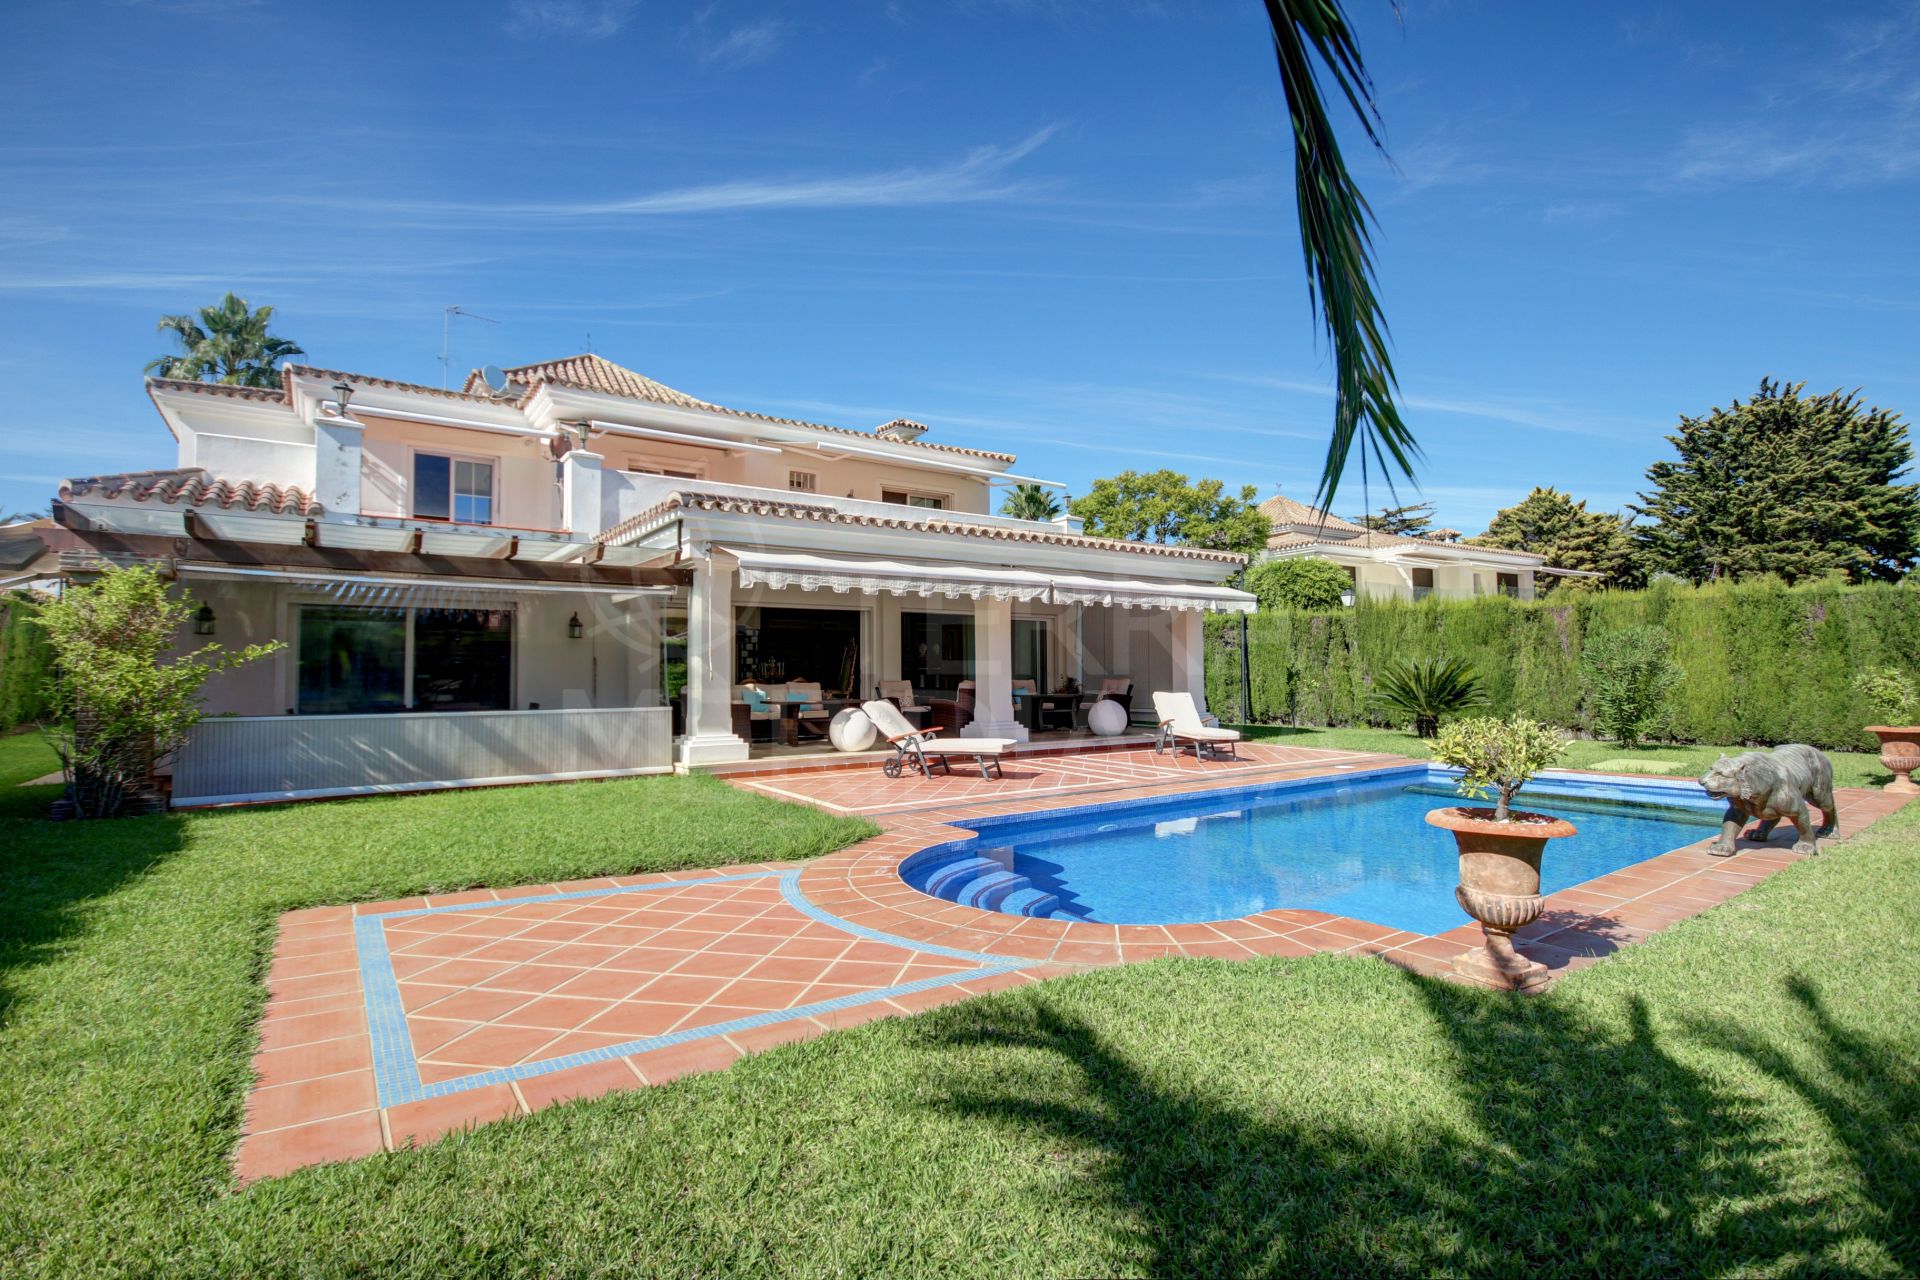 Villa de estilo mediterráneo con 5 dormitorios en venta cerca de la playa en Casasola, Estepona